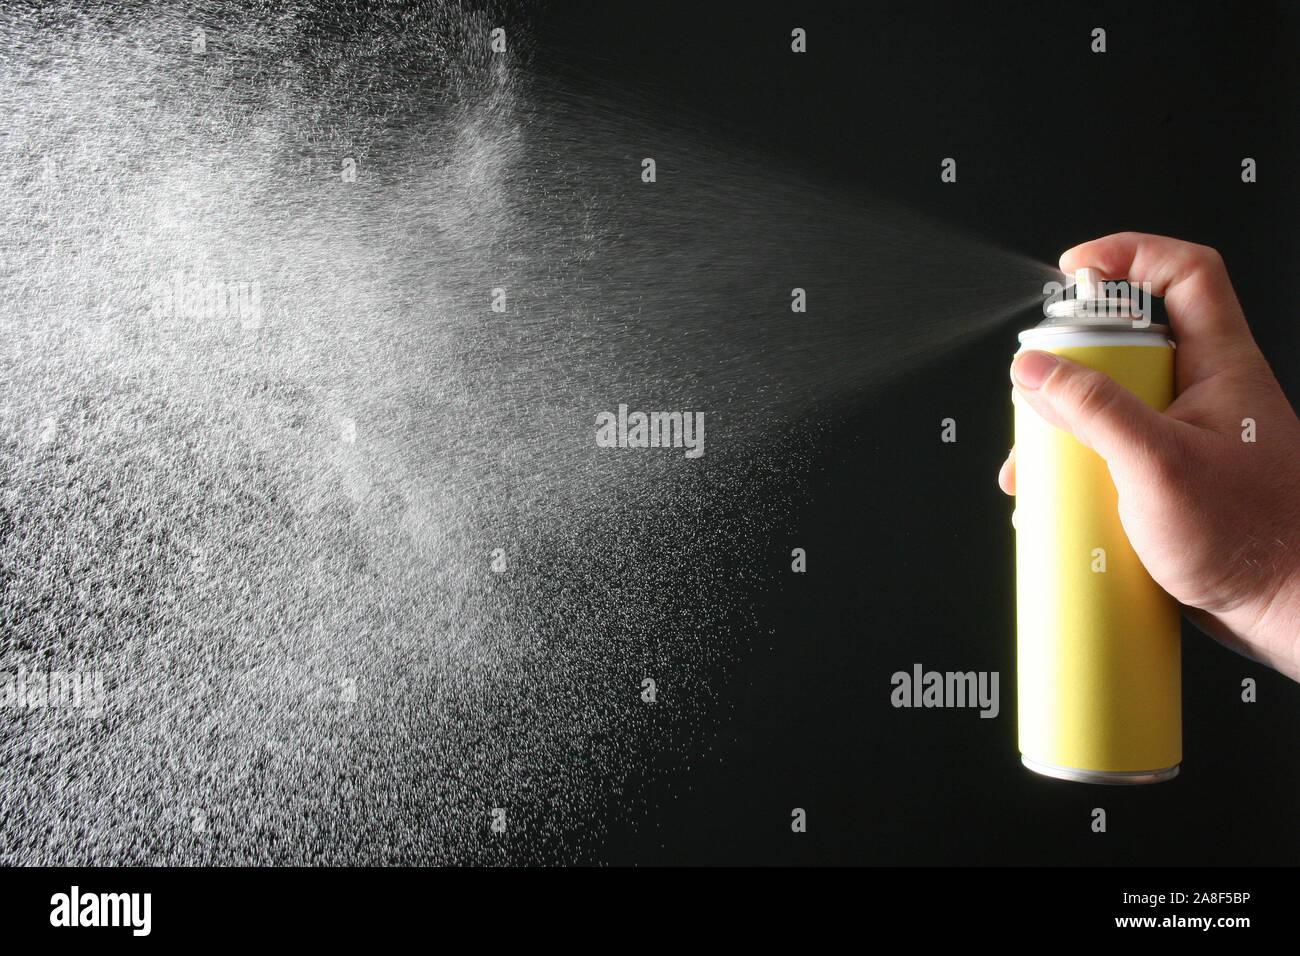 Spraydose, Sprühnebel, CO2, Umwelt, Gift, Haarspray, Deo, Reinigungsmittel, Ozonloch, Stock Photo